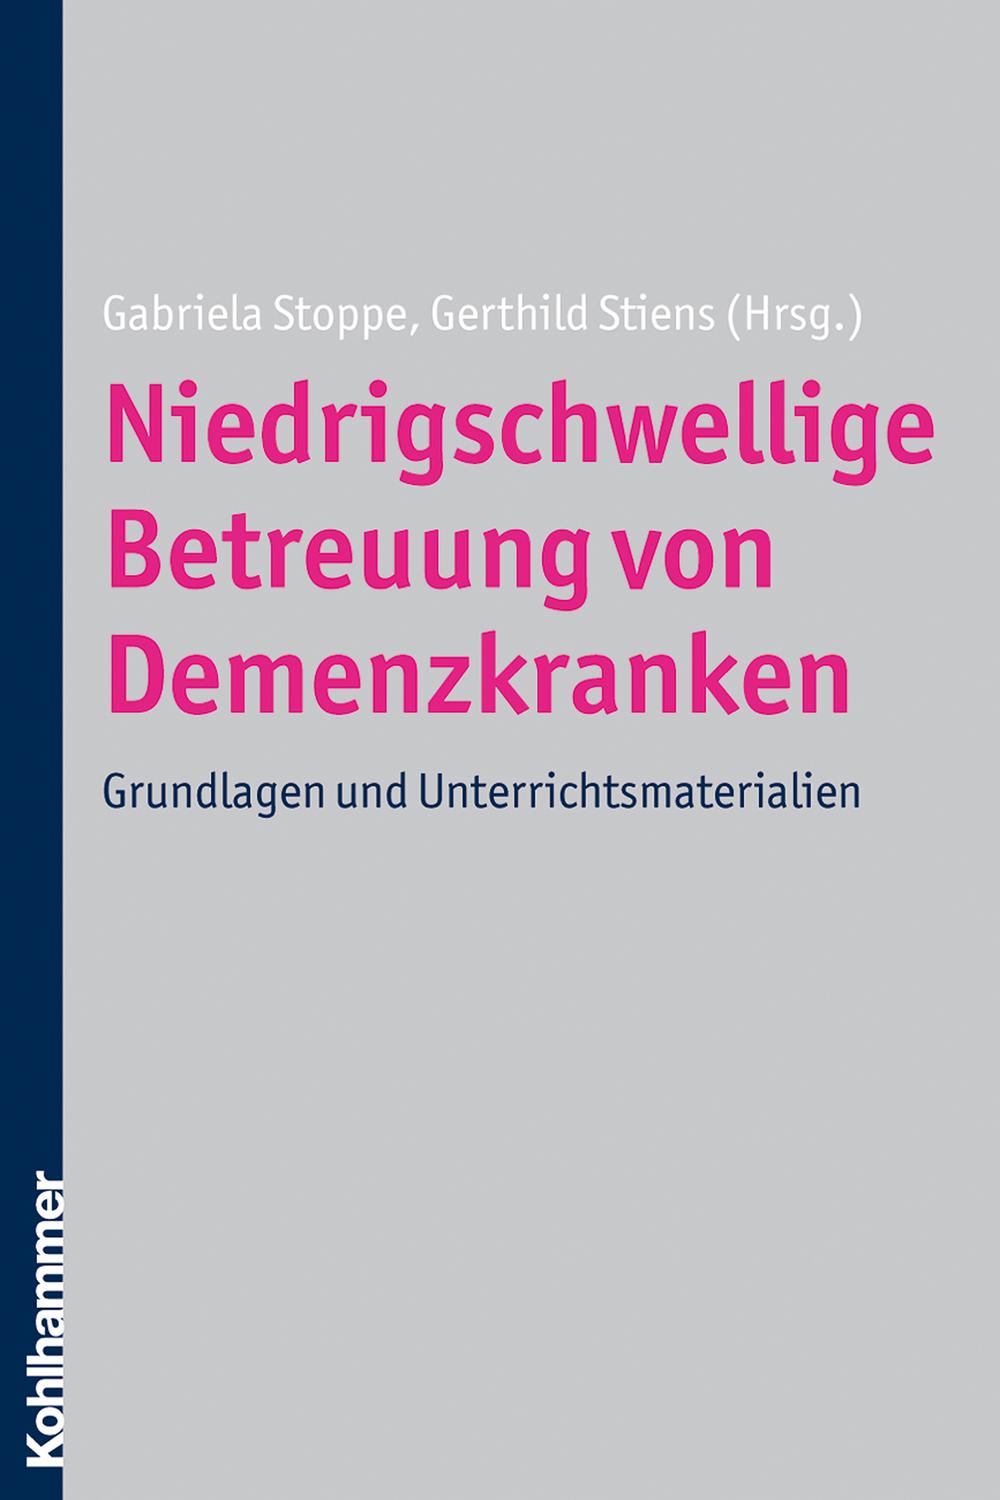 Niedrigschwellige Betreuung von Demenzkranken - Gabriela Stoppe, Gerthild Stiens